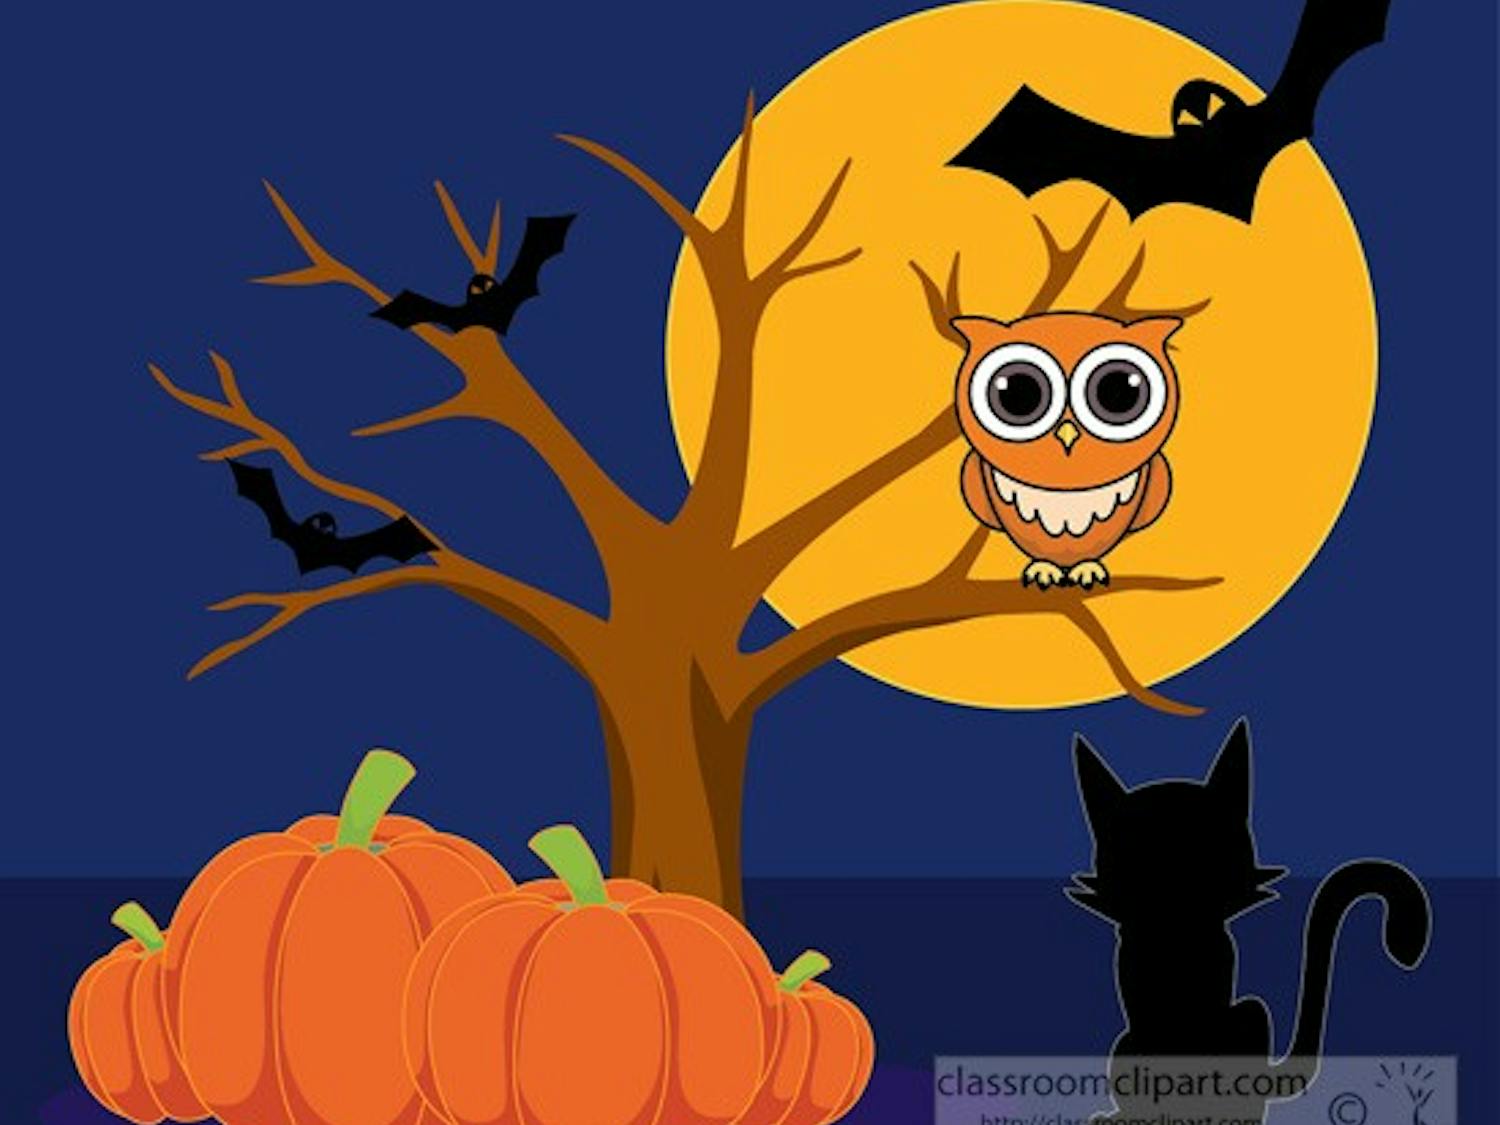 halloween-pumpkins-with-owl-bats-cat-clipart.jpg